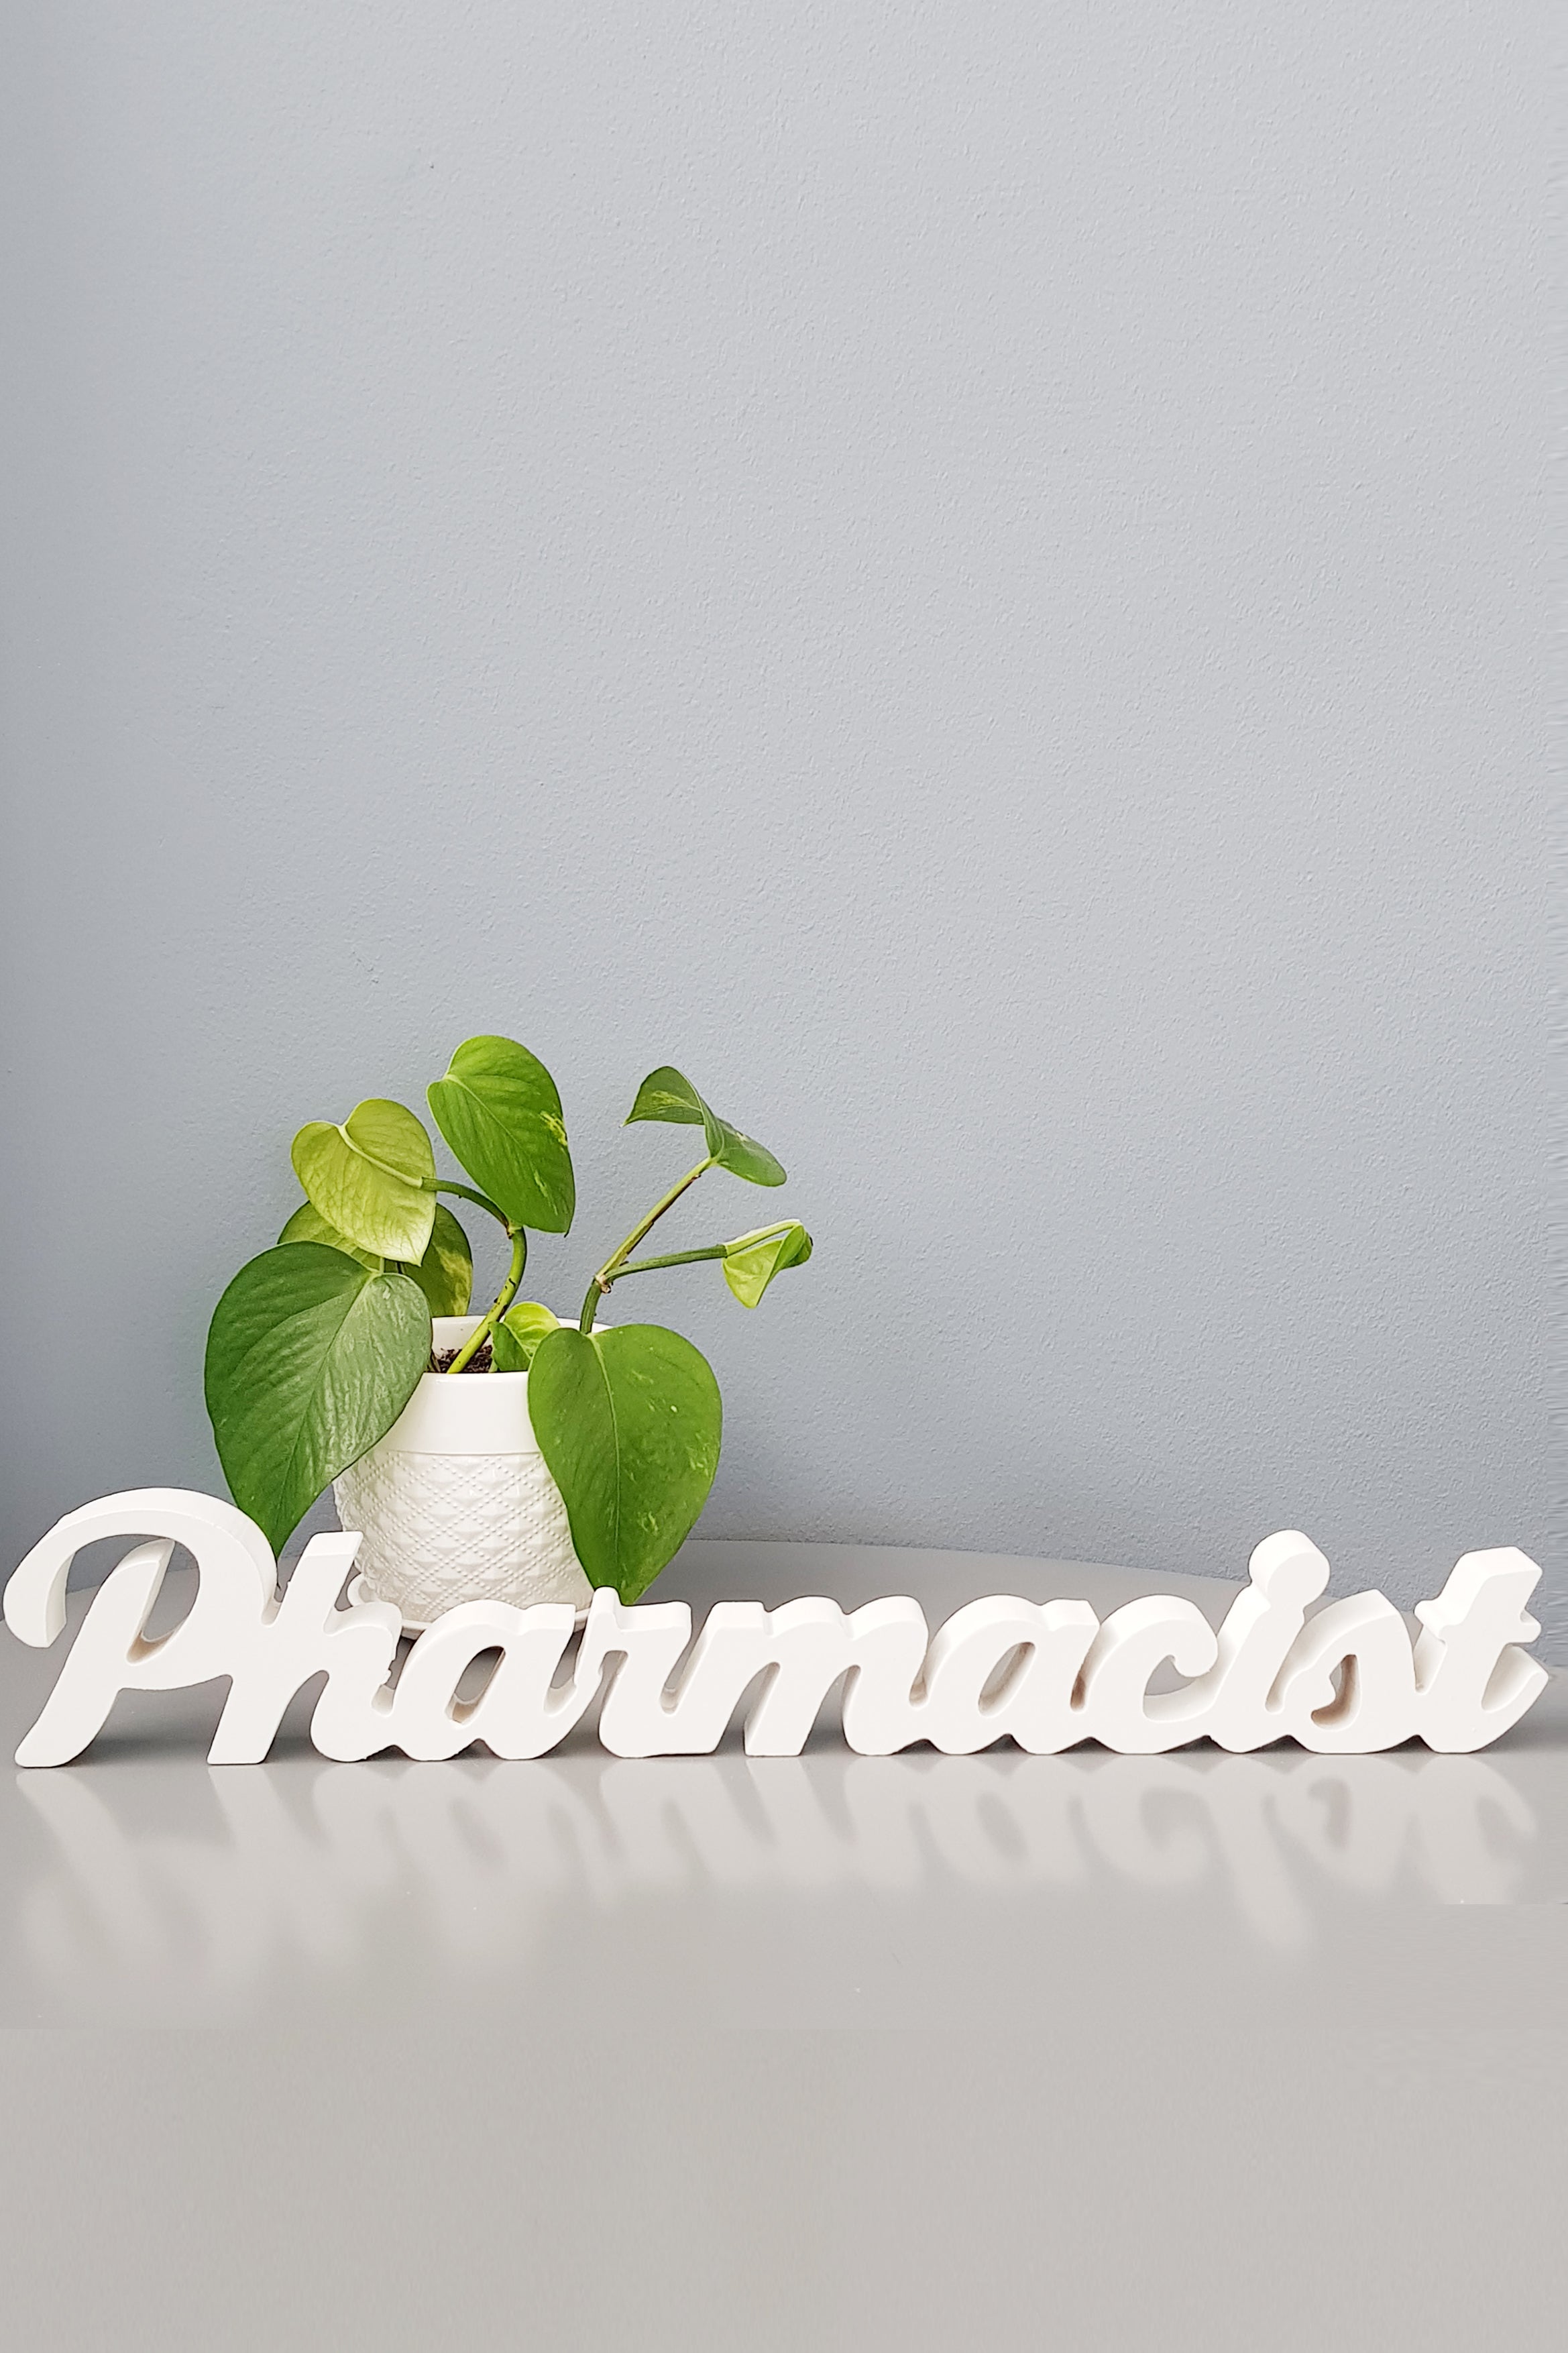 products-pharmasist-jpg